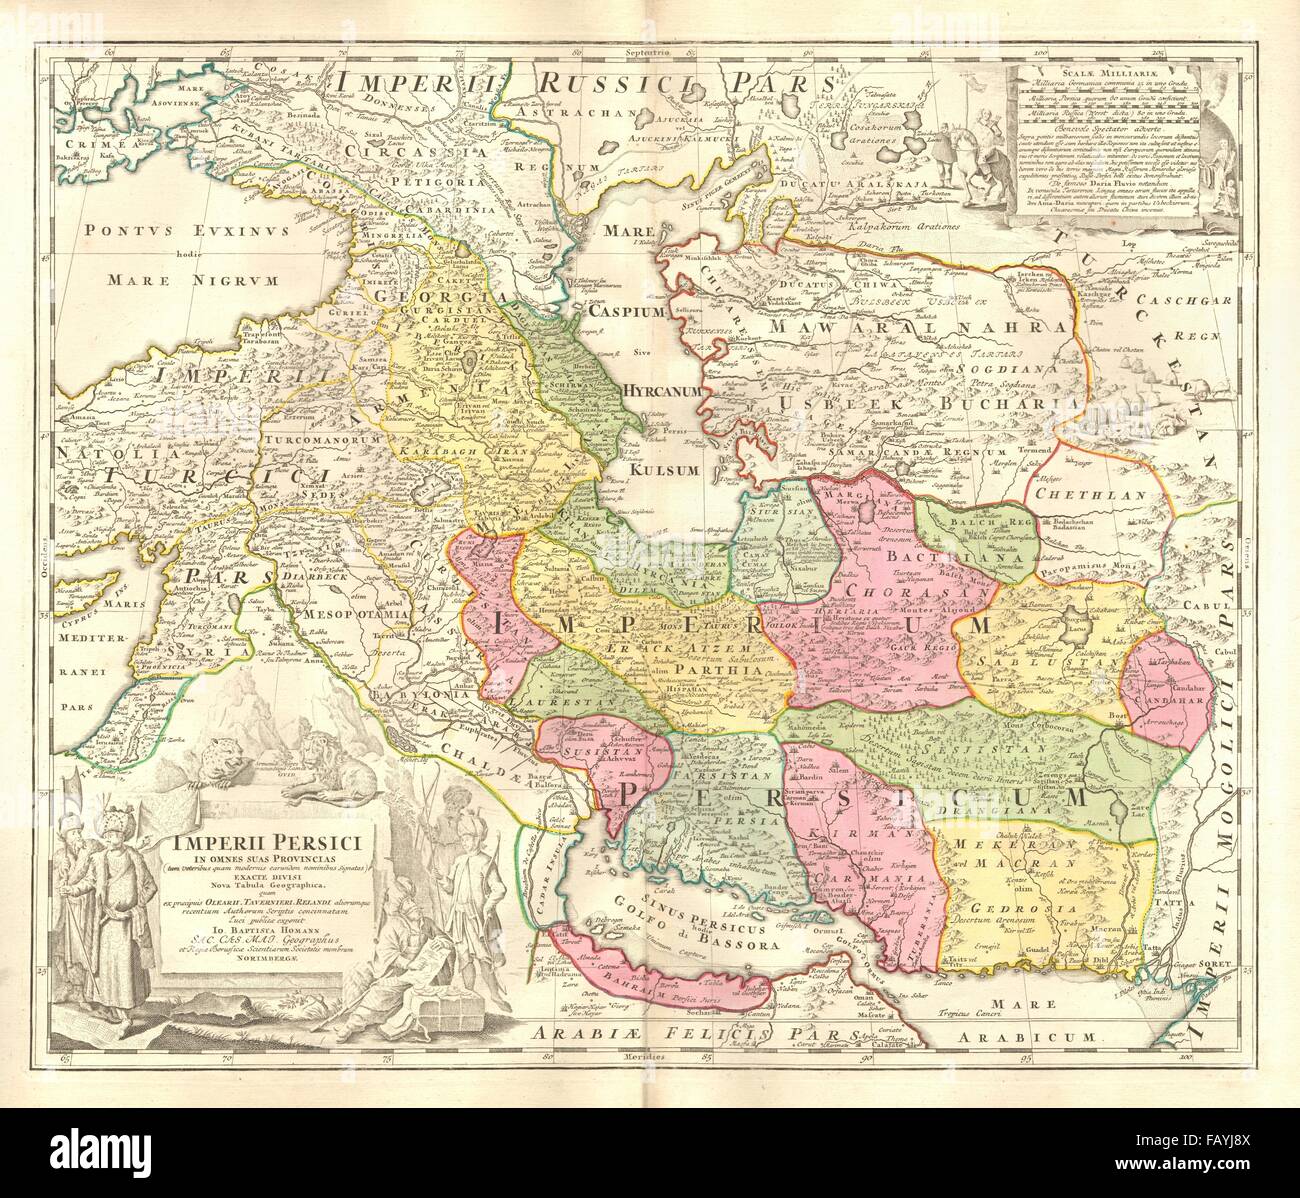 'Imperii Persici in omnes suas provincias'. Persian Empire. HOMANN, c1725 map Stock Photo